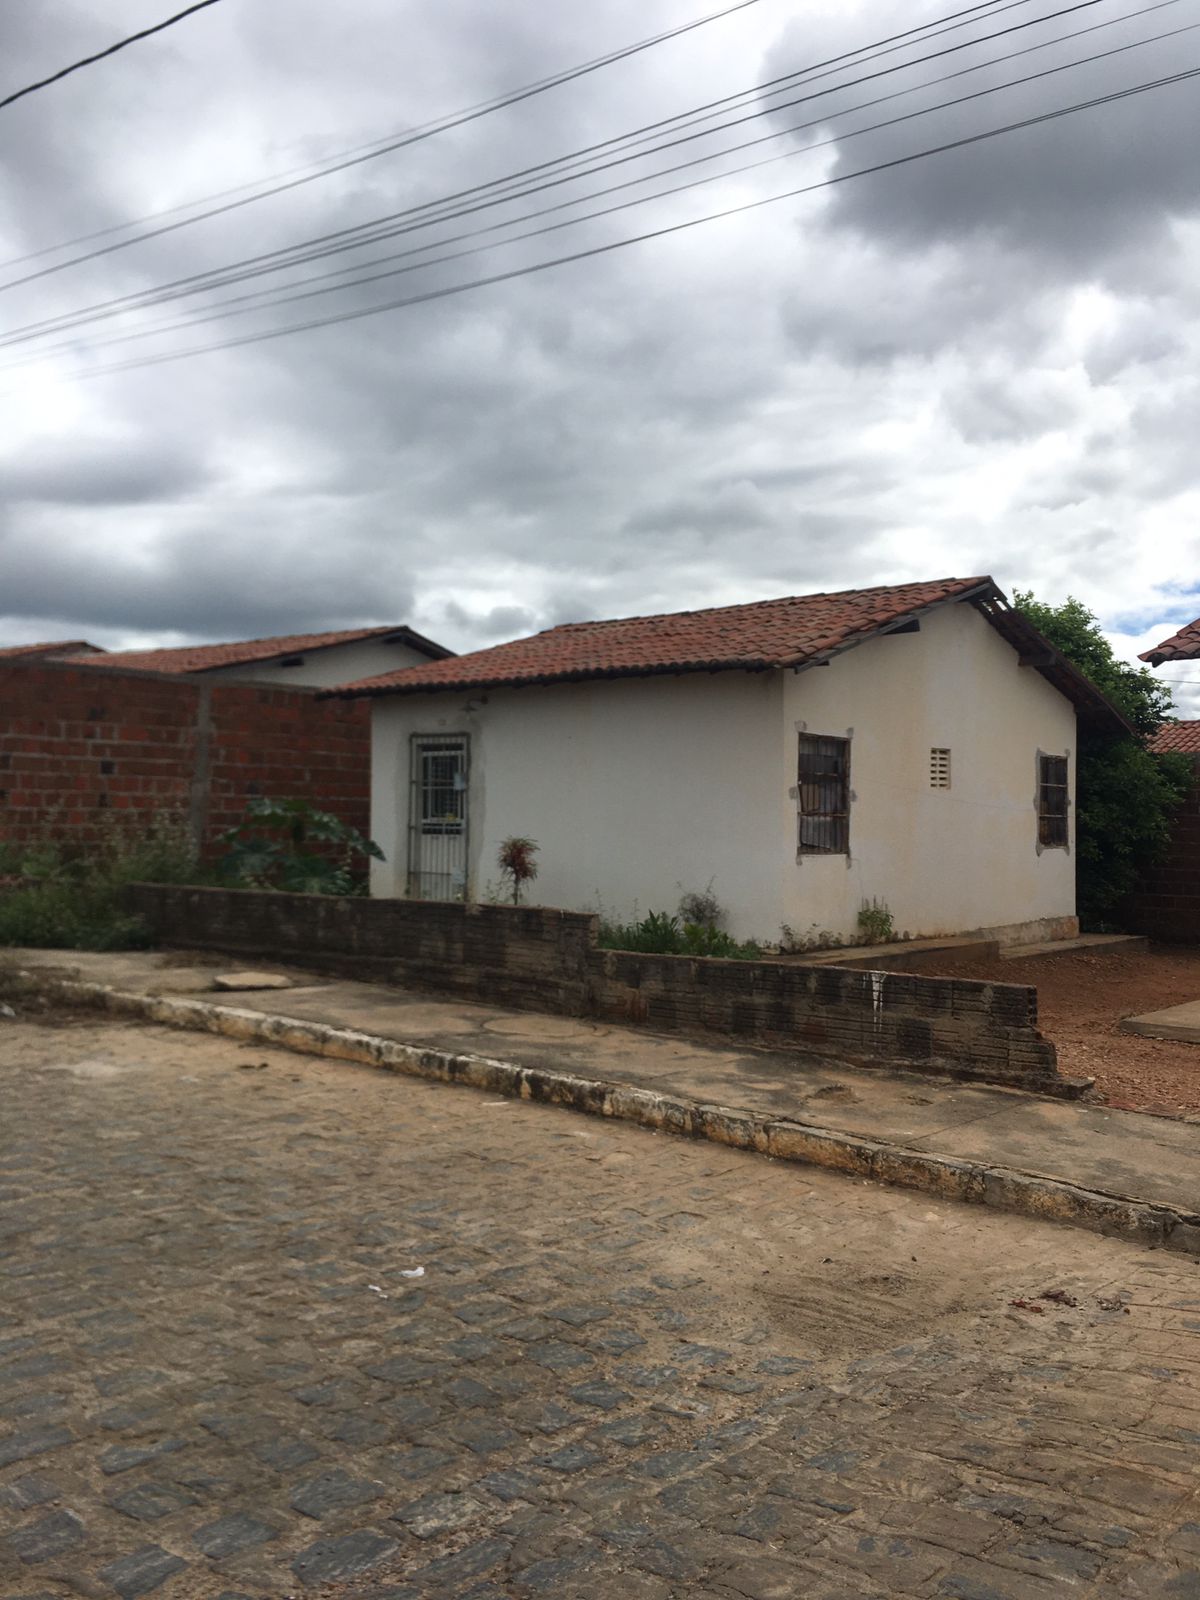 Cresce o número de casas abandonadas no Vila Bela, em ST